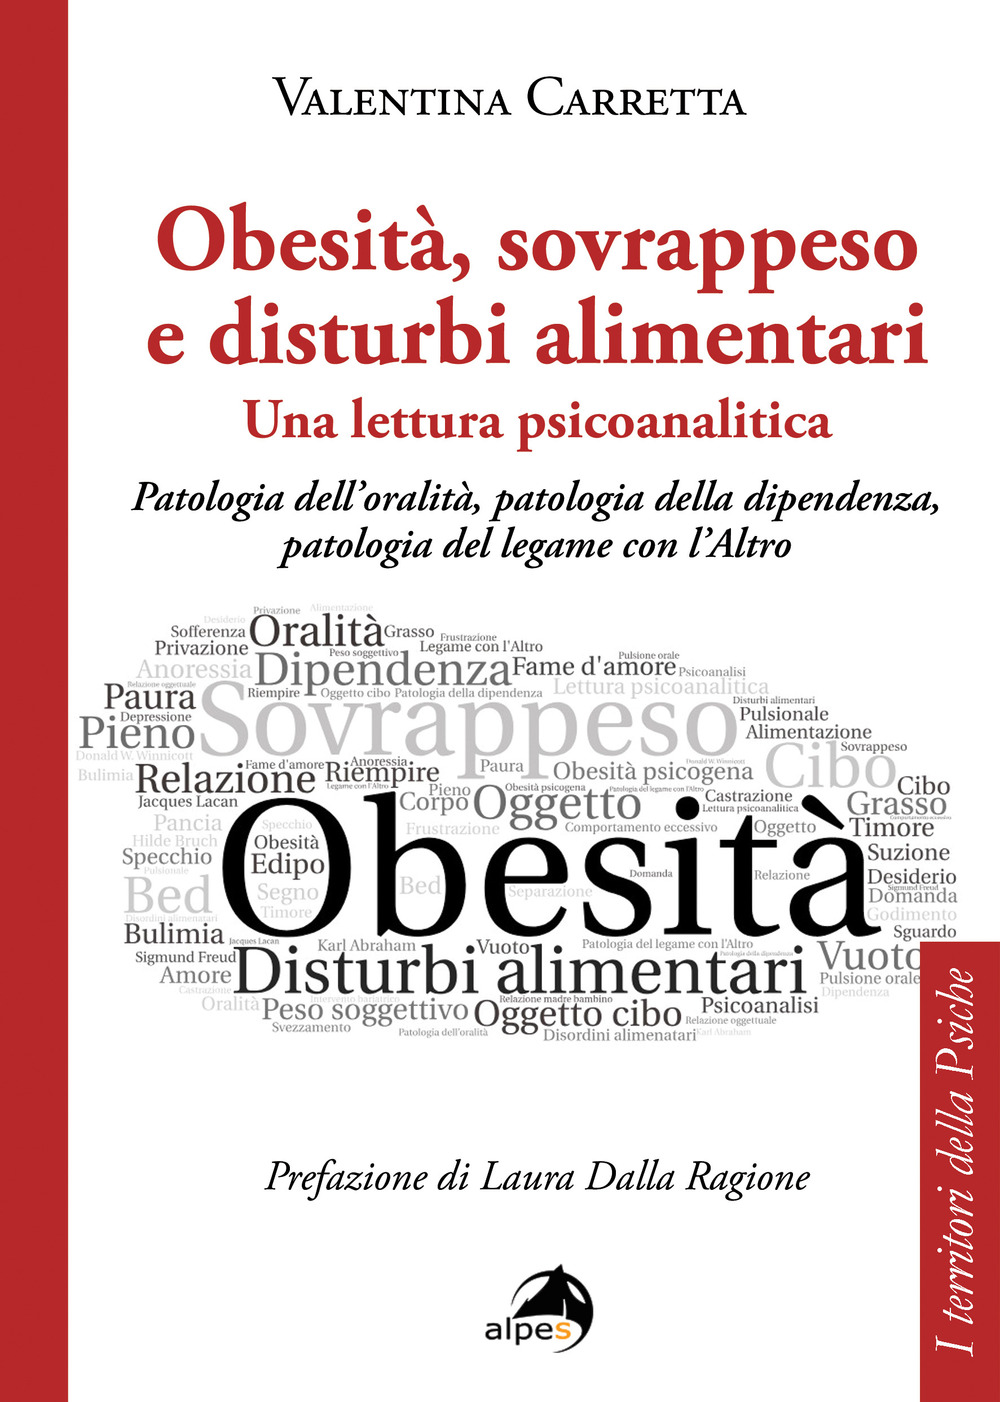 Obesità, sovrappeso e disturbi alimentari: una lettura psicoanalitica. Patologia dell'oralità, patologia della dipendenza, patologia del legame con l'altro